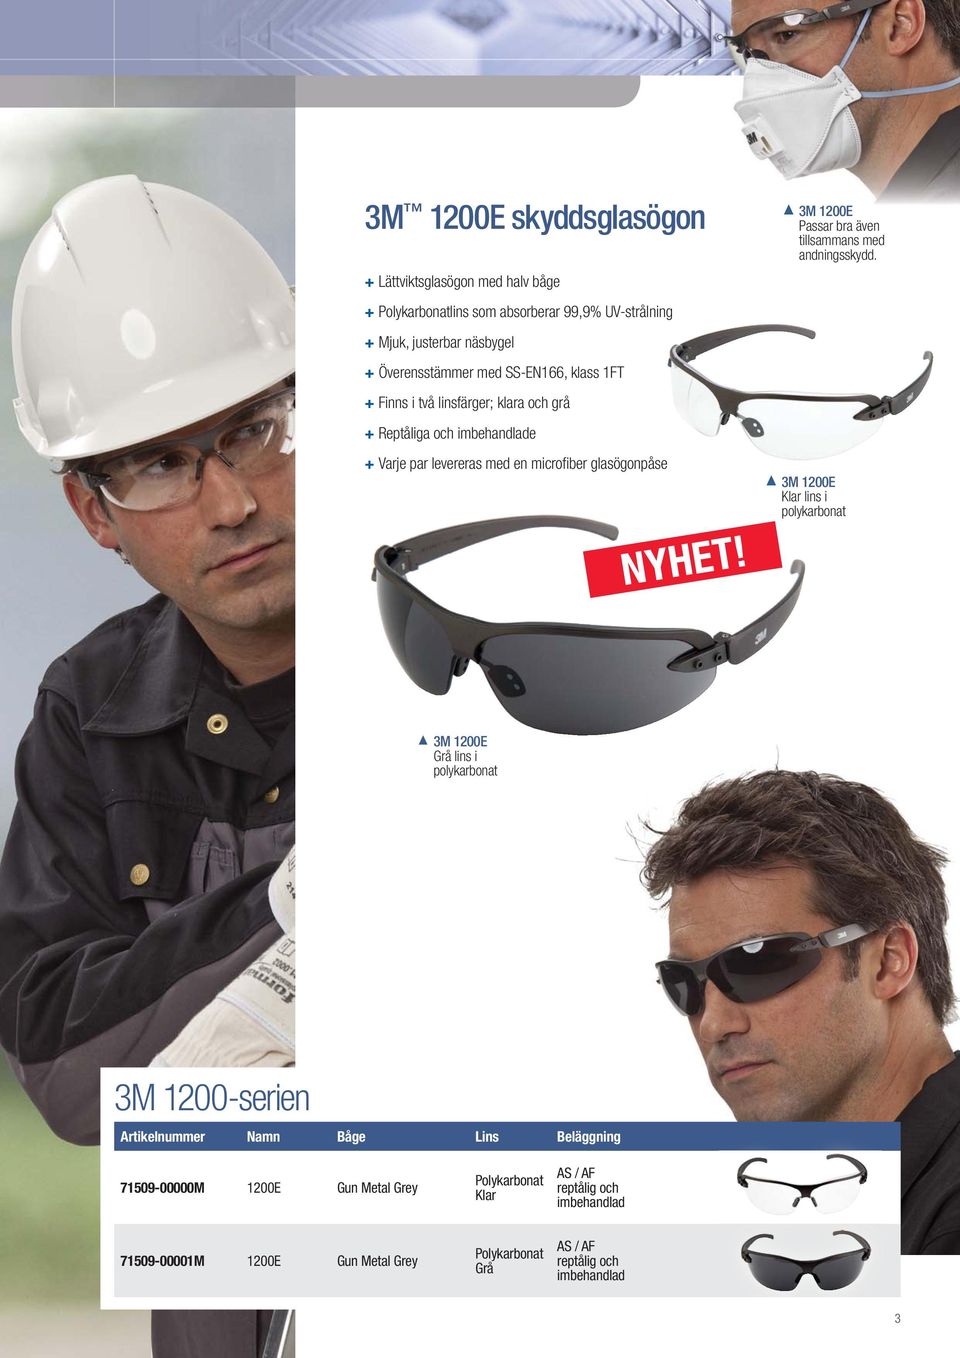 microfi ber glasögonpåse 3M 1200E Passar bra även tillsammans med andningsskydd.